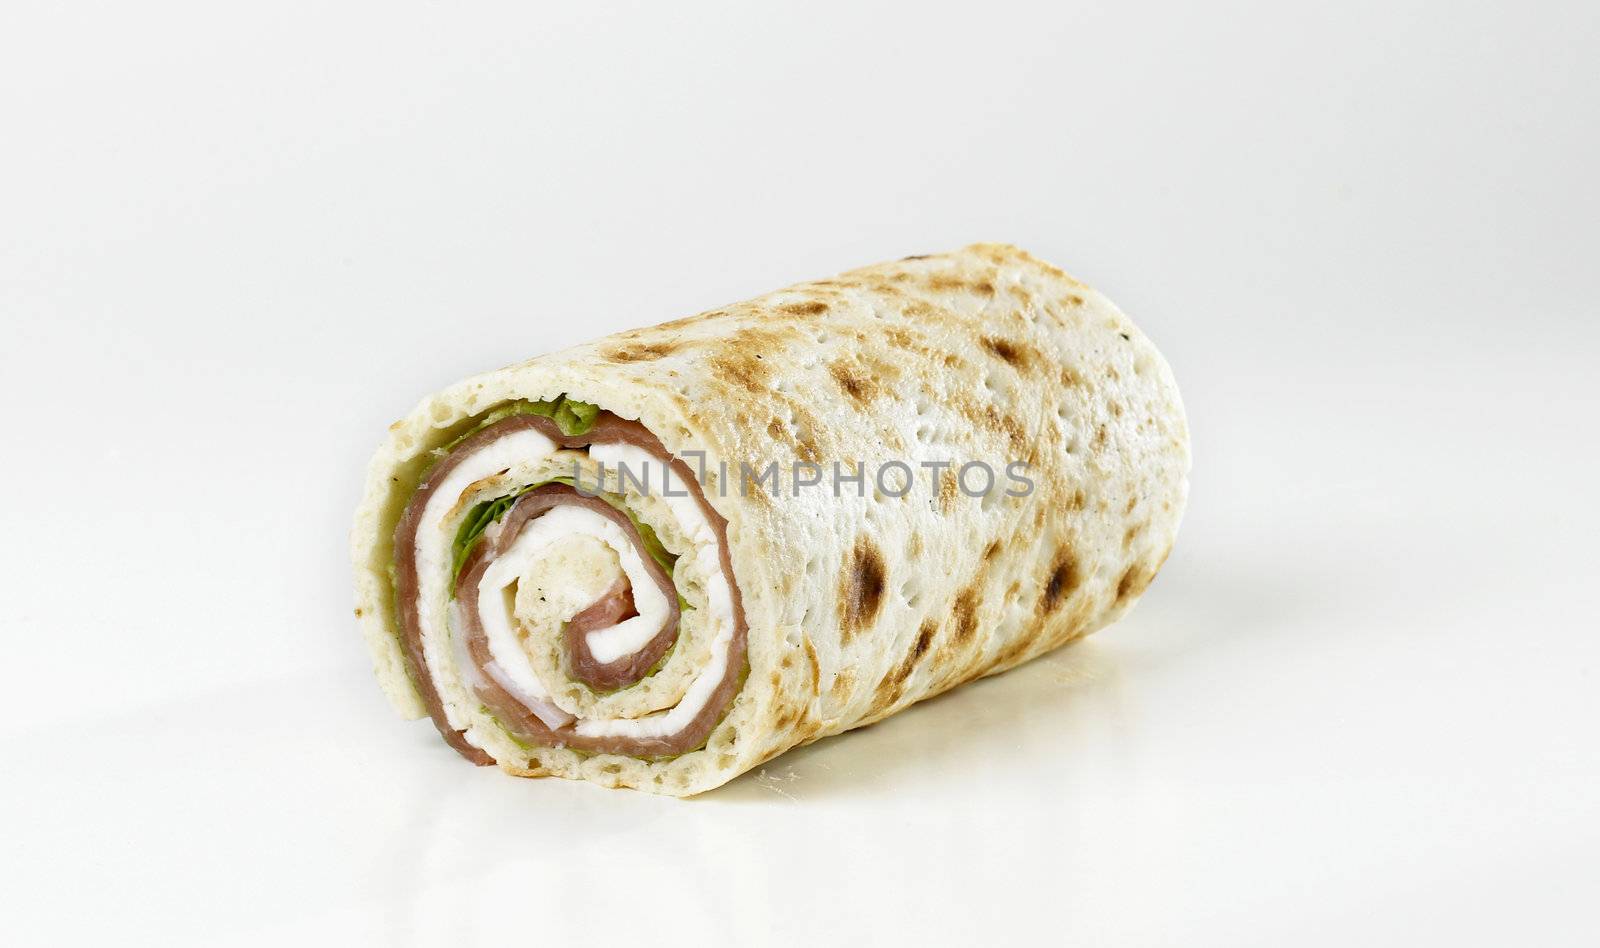 Rolled Bread, Mozzarella Cheese and Prosciutto Ham by studiovitra